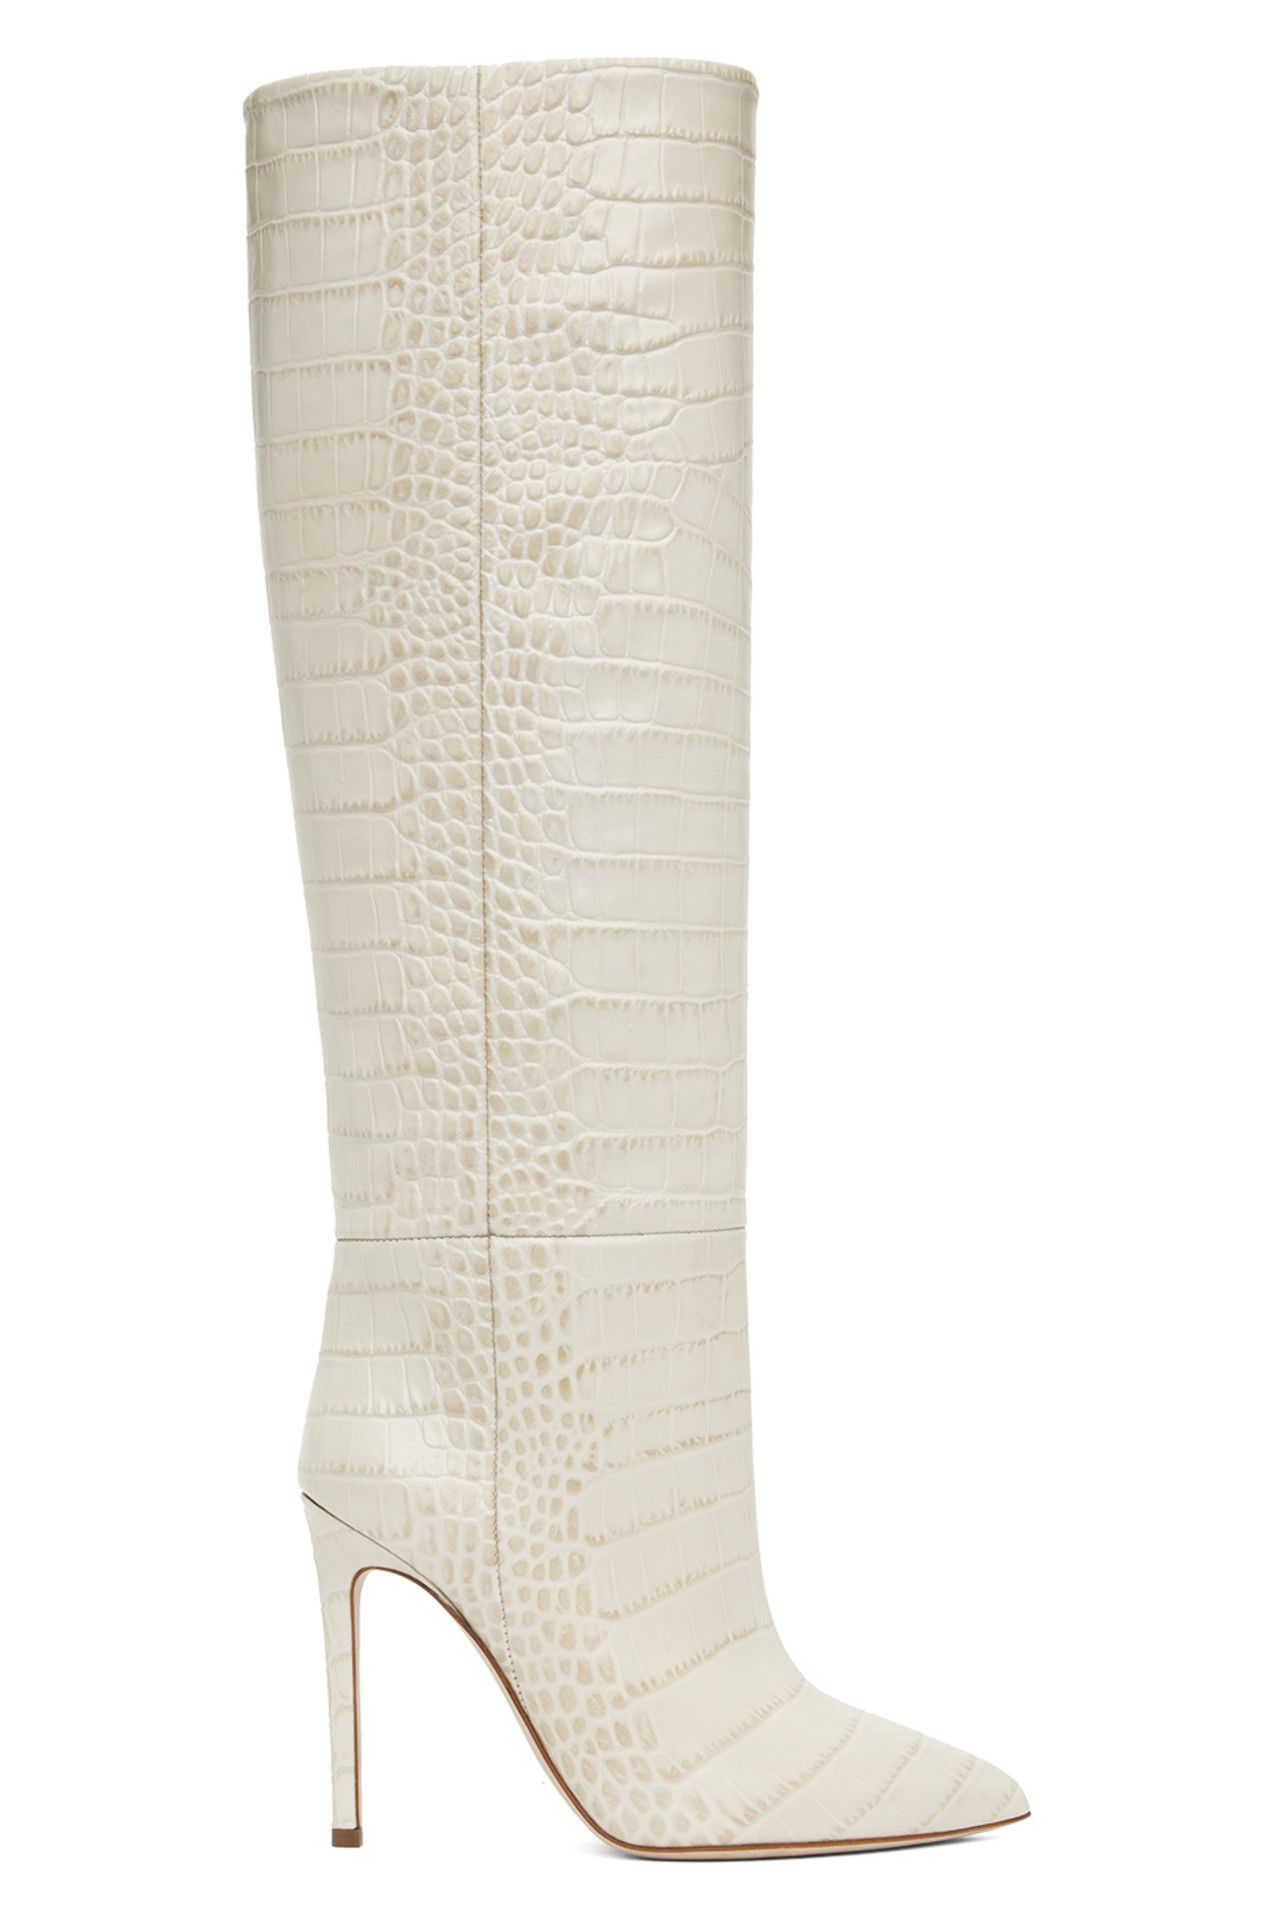 Paris Texas - Off-White Stiletto Boots | SSENSE